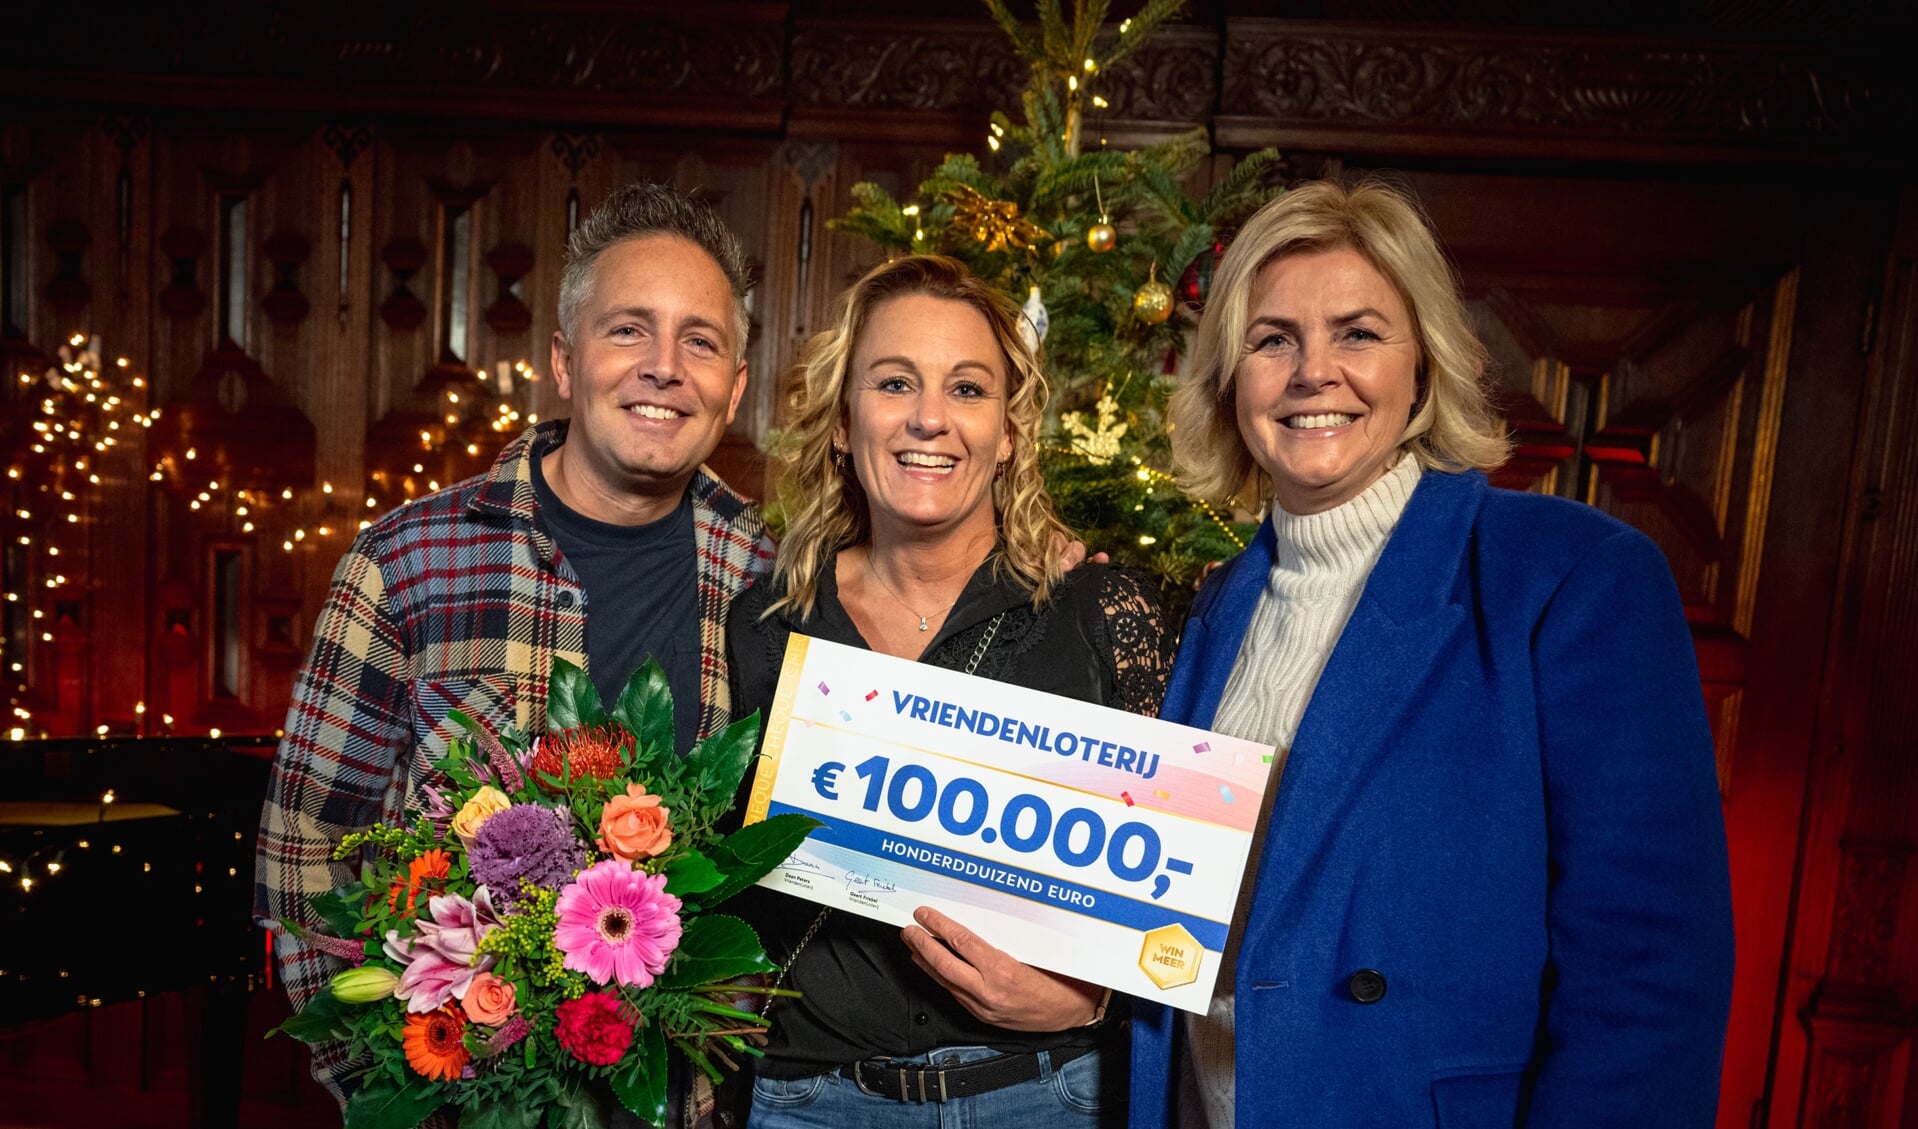 Dayen wordt verrast door VriendenLoterij ambassadeur Irene Moors met cheque van 100.000 euro.